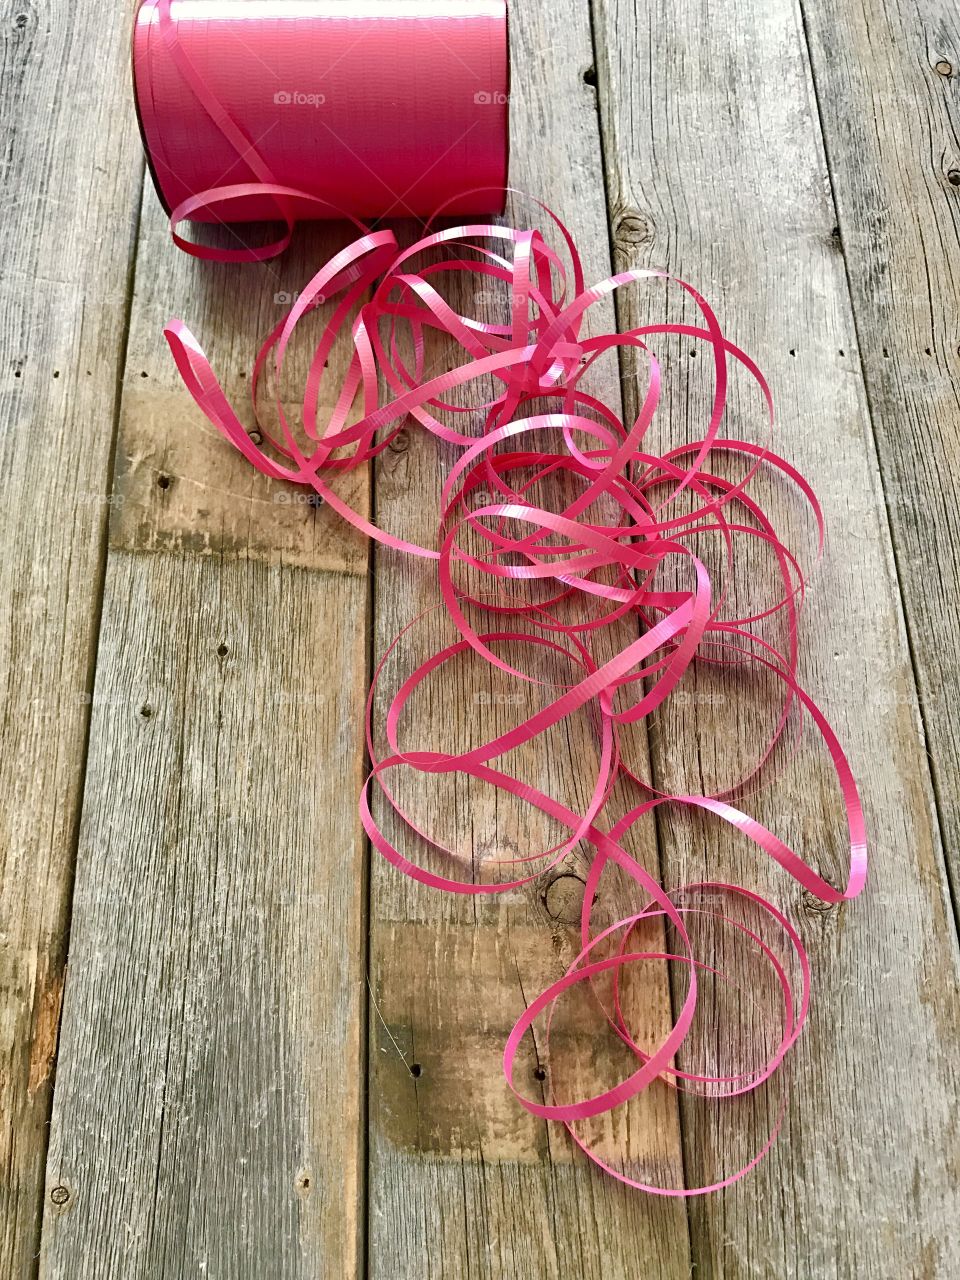 Swirls of pink ribbon